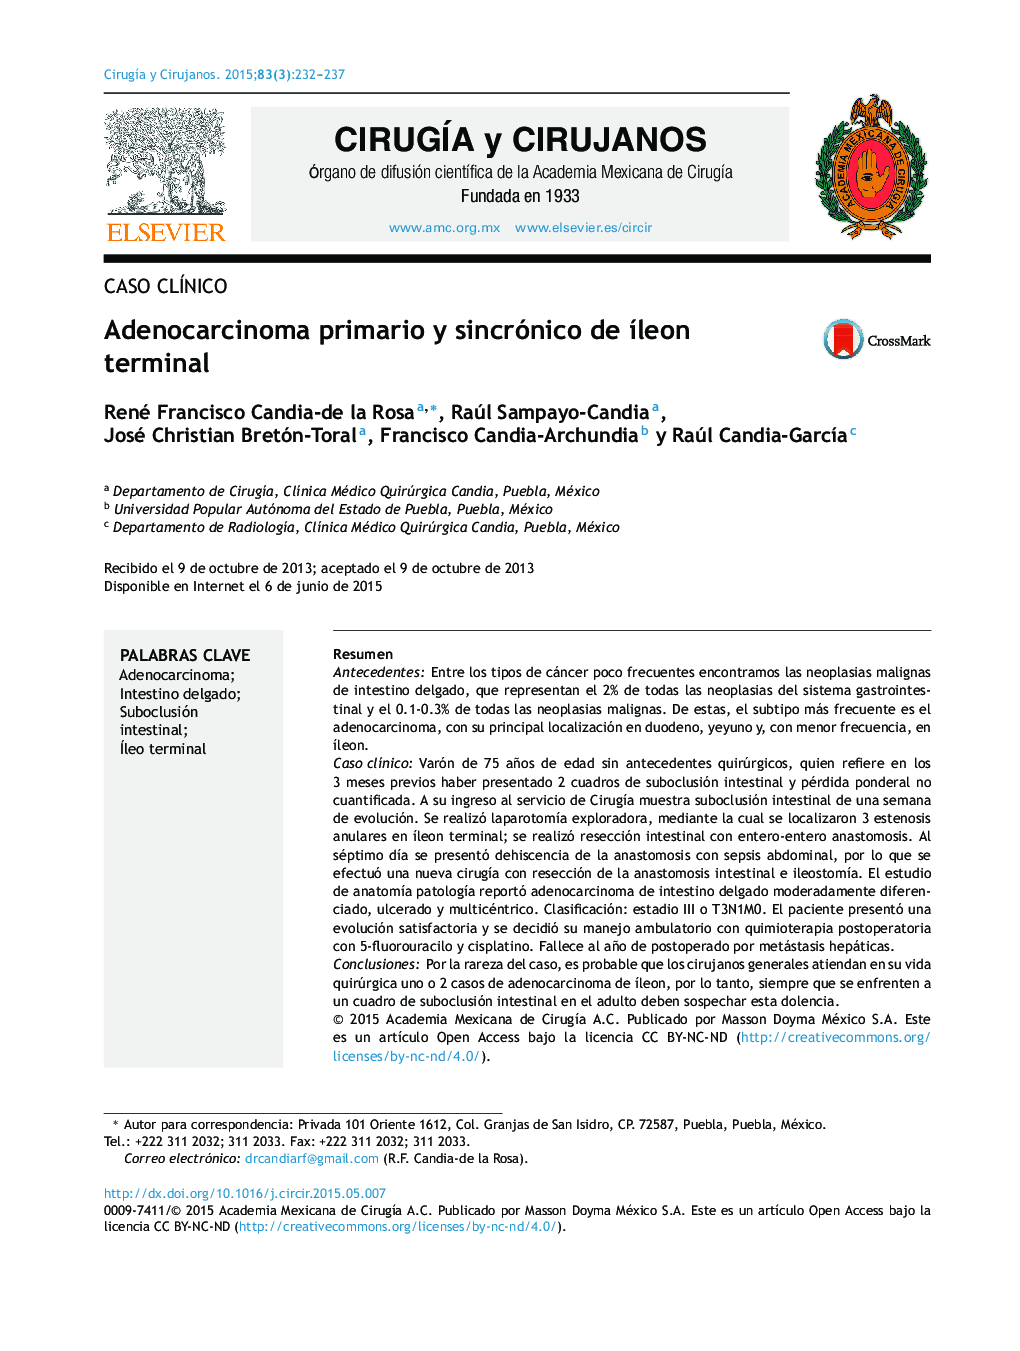 Adenocarcinoma primario y sincrónico de íleon terminal